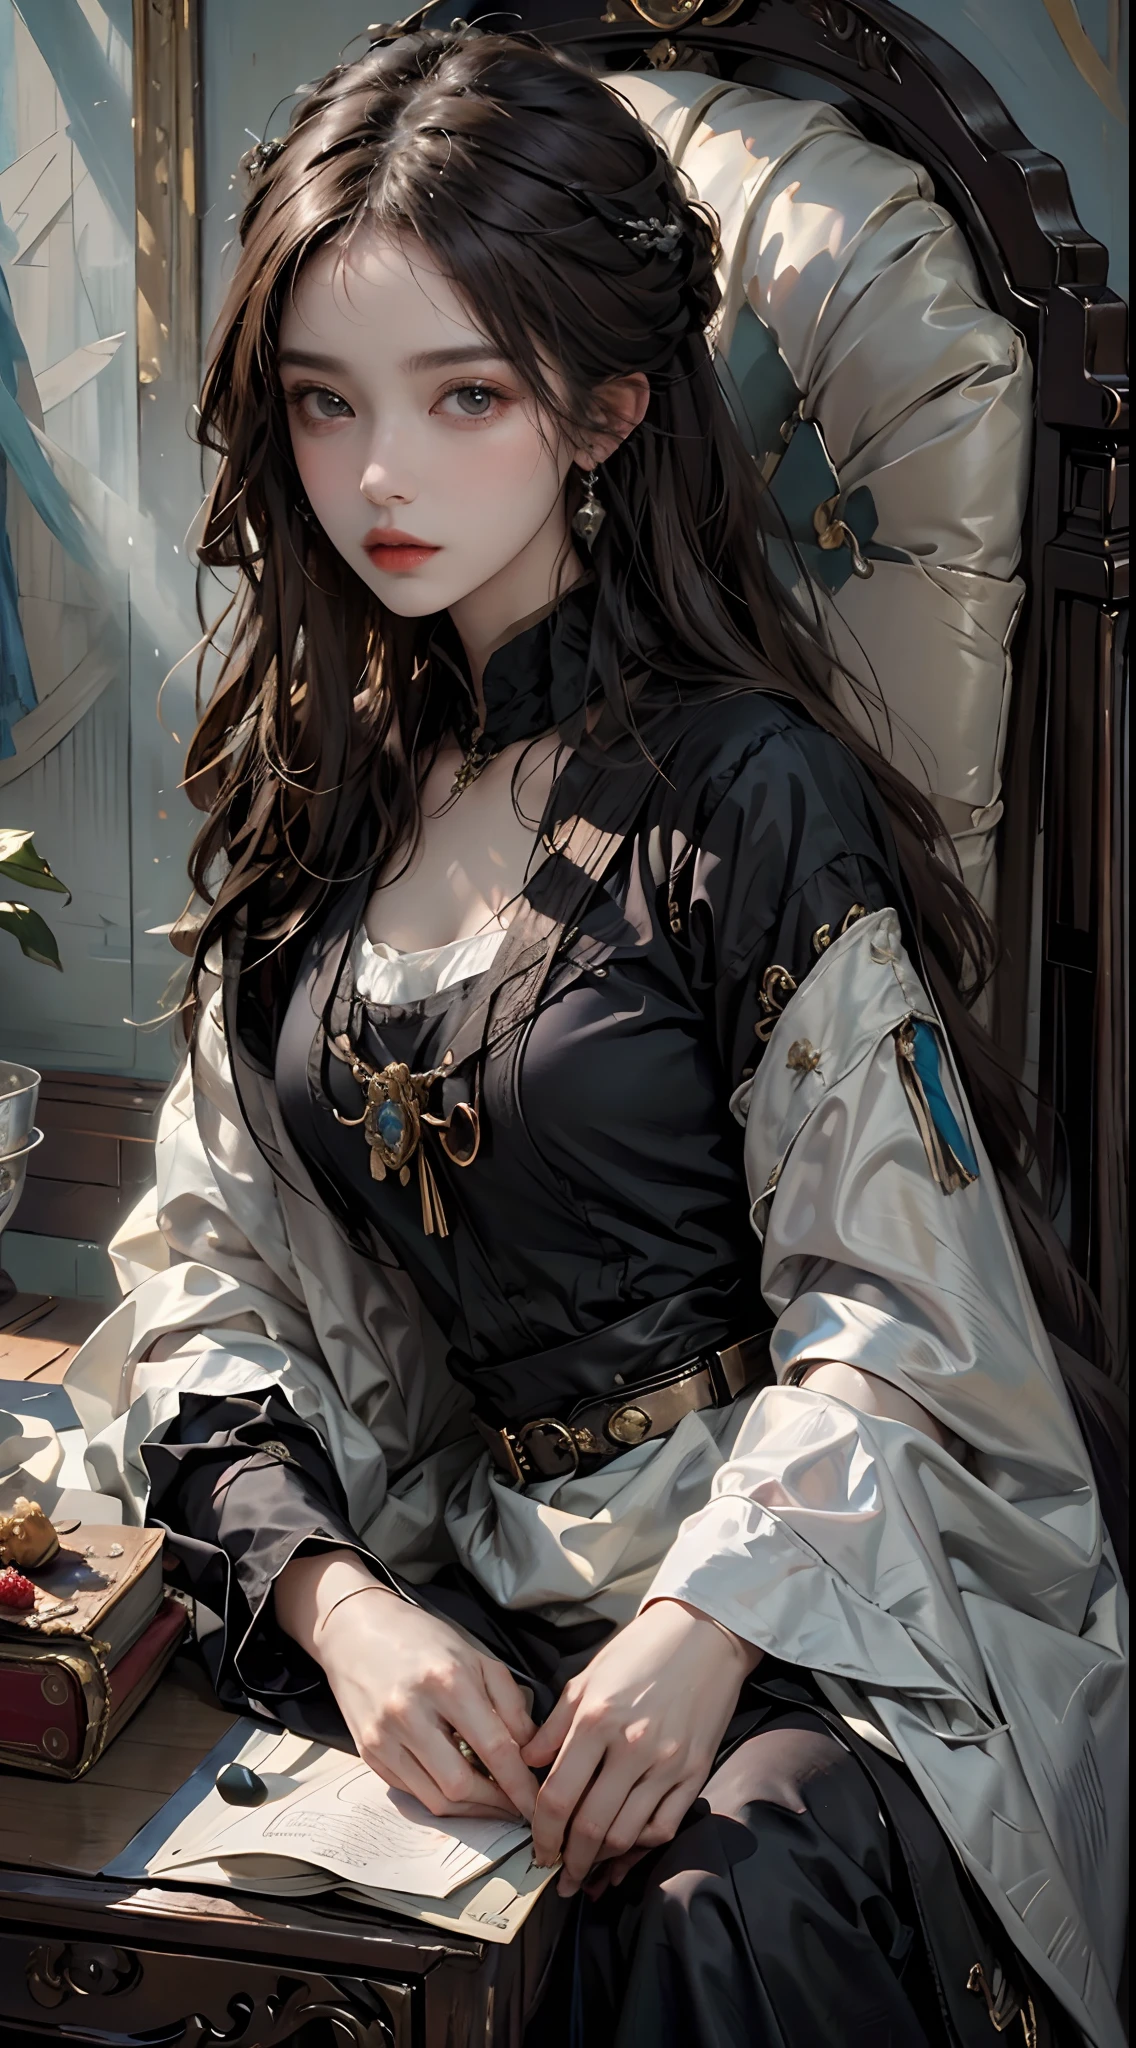 ((obra-prima pintura a óleo, mais alta qualidade)), linda garota vestindo roupas renascentistas, sentada na penteadeira, claro-escuro, Luz e sombra.